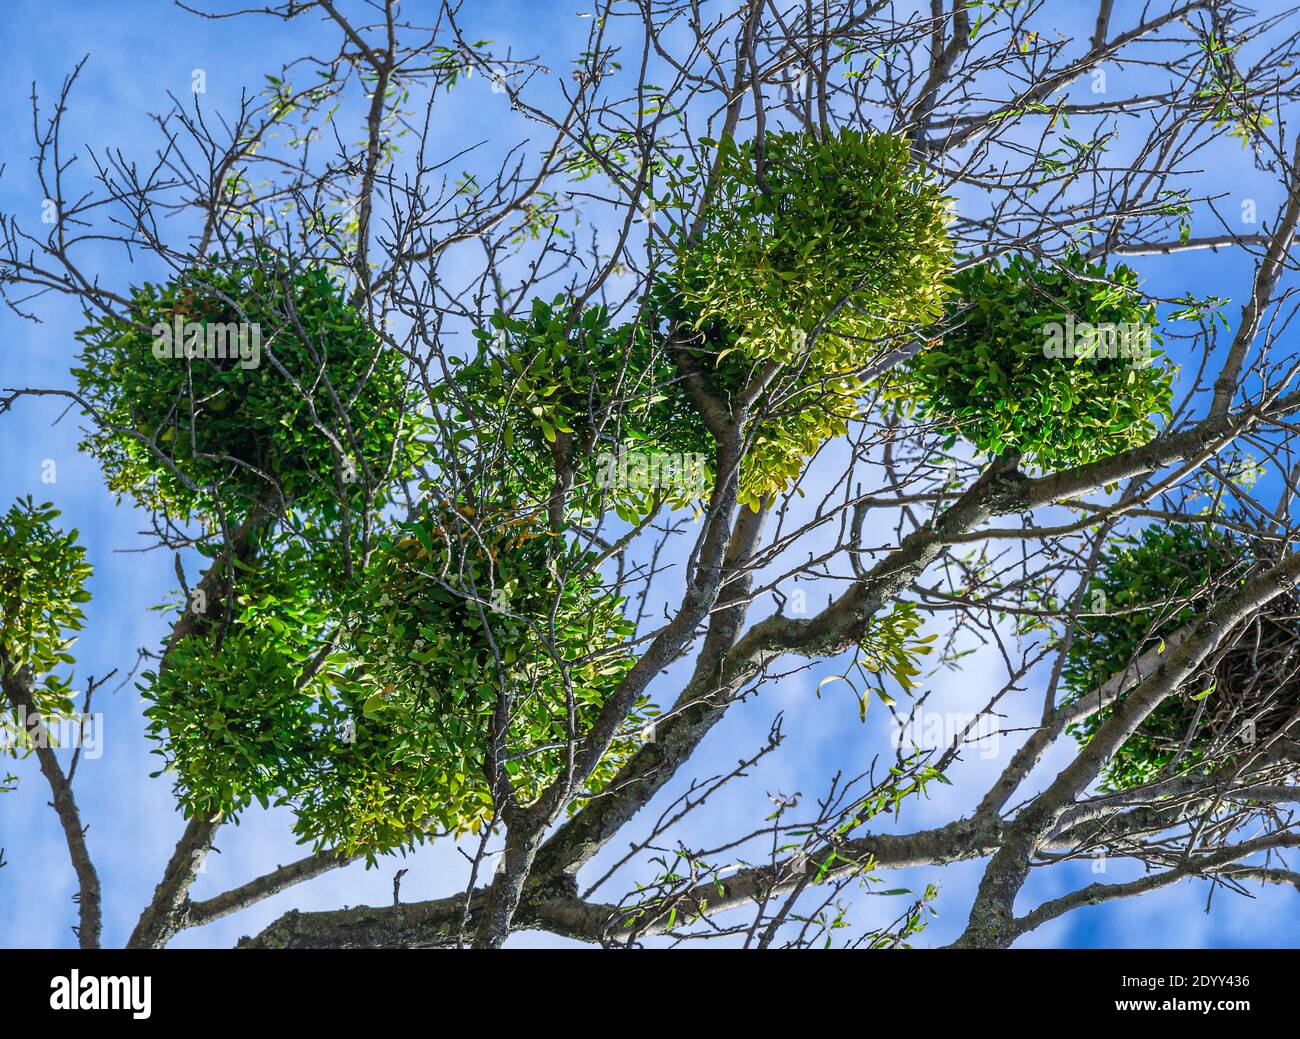 Die Bündel der Mistelpflanzen viscum das Album auf dem Baum, in der natürlichen Umgebung. Stockfoto